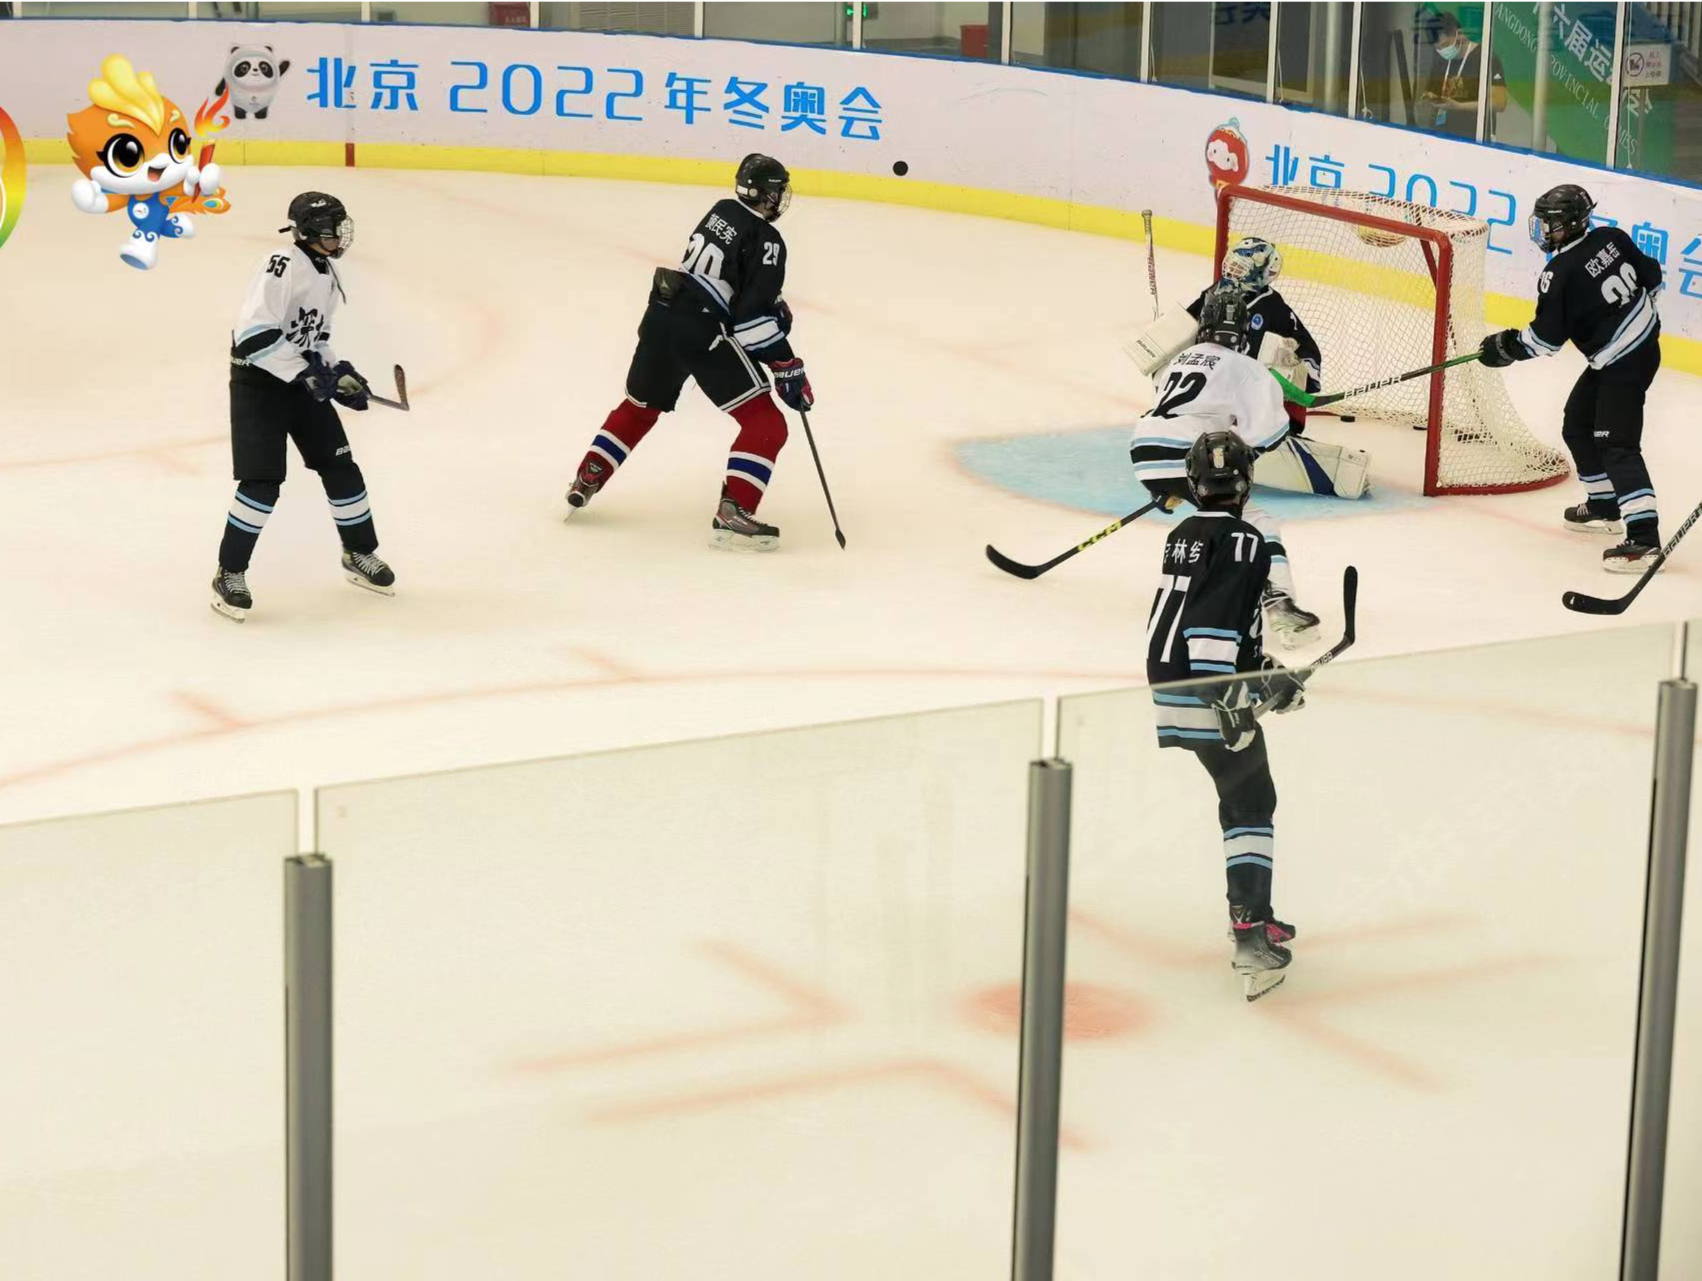 广东省运会首设冰球、花样滑冰项目  比赛将于8月8日在深圳拉开序幕